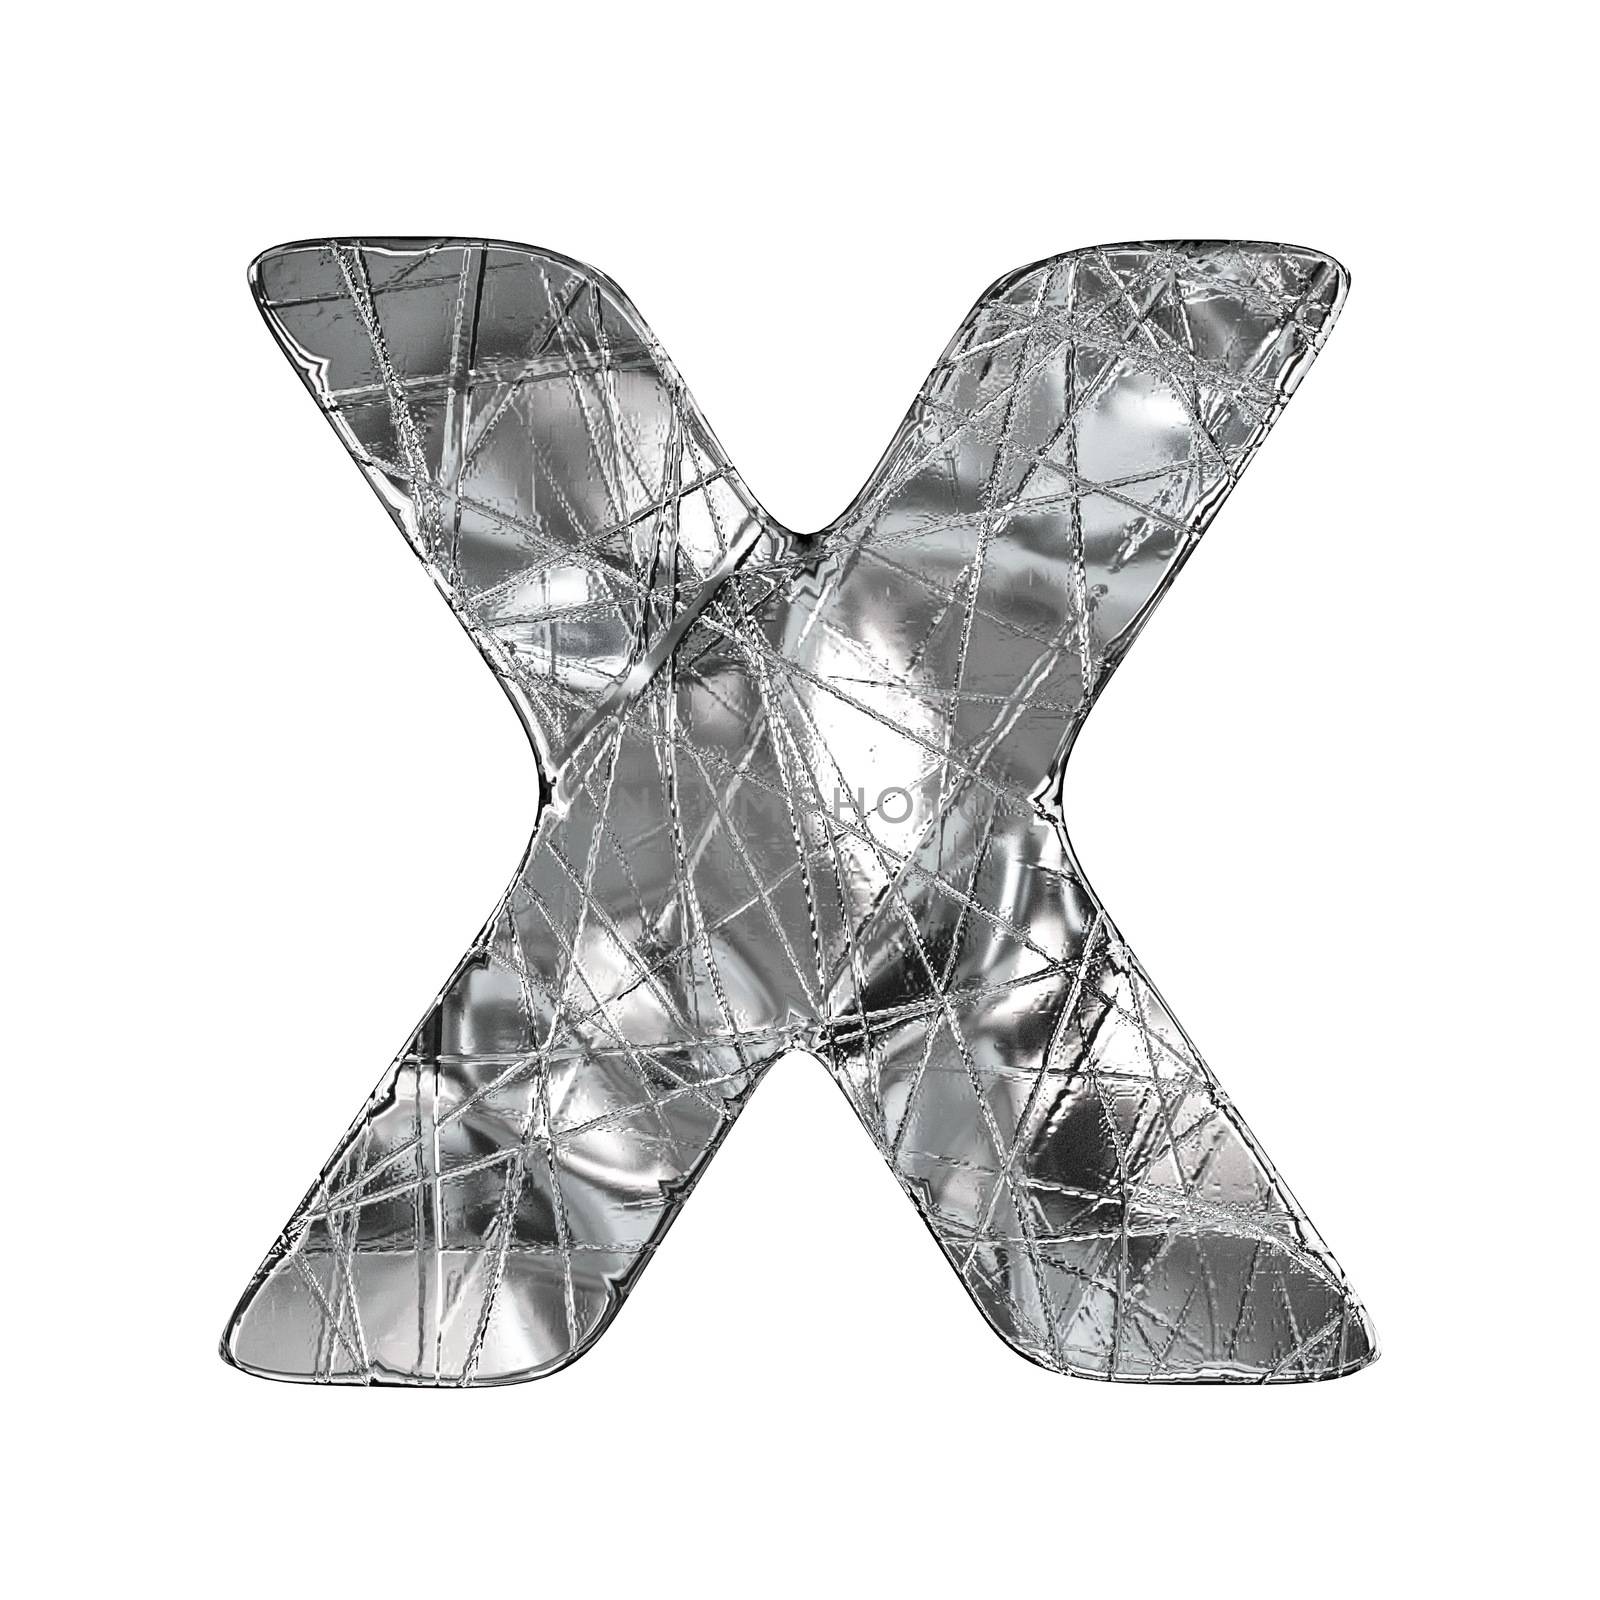 Grunge aluminium foil font letter X 3D render illustration isolated on white background